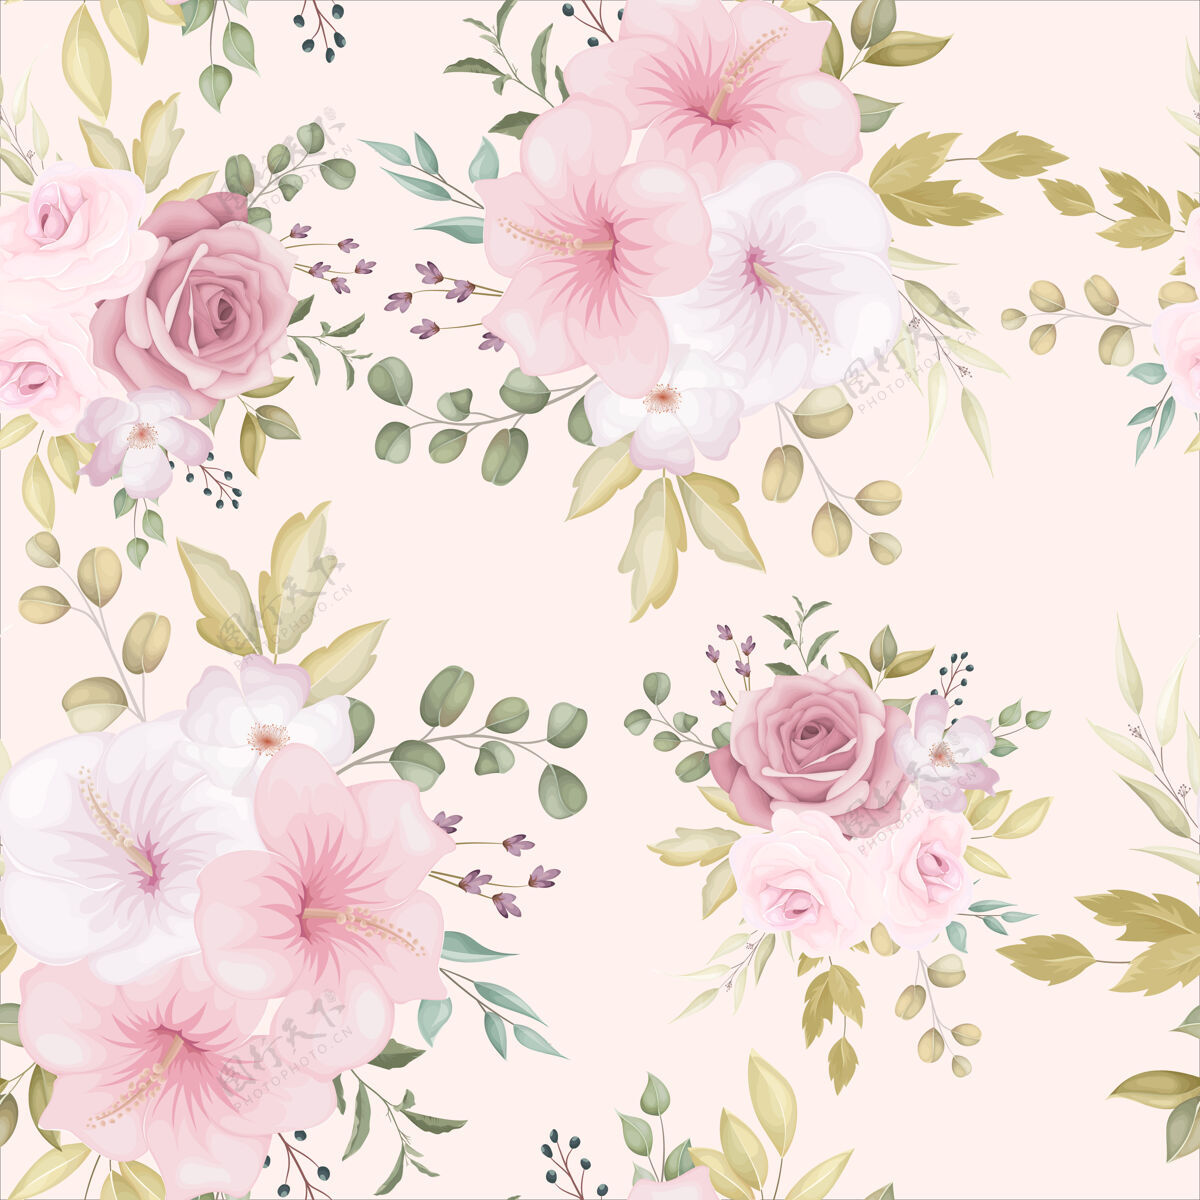 壁纸美丽的花朵与灰尘粉色花朵无缝模式优雅复古花卉